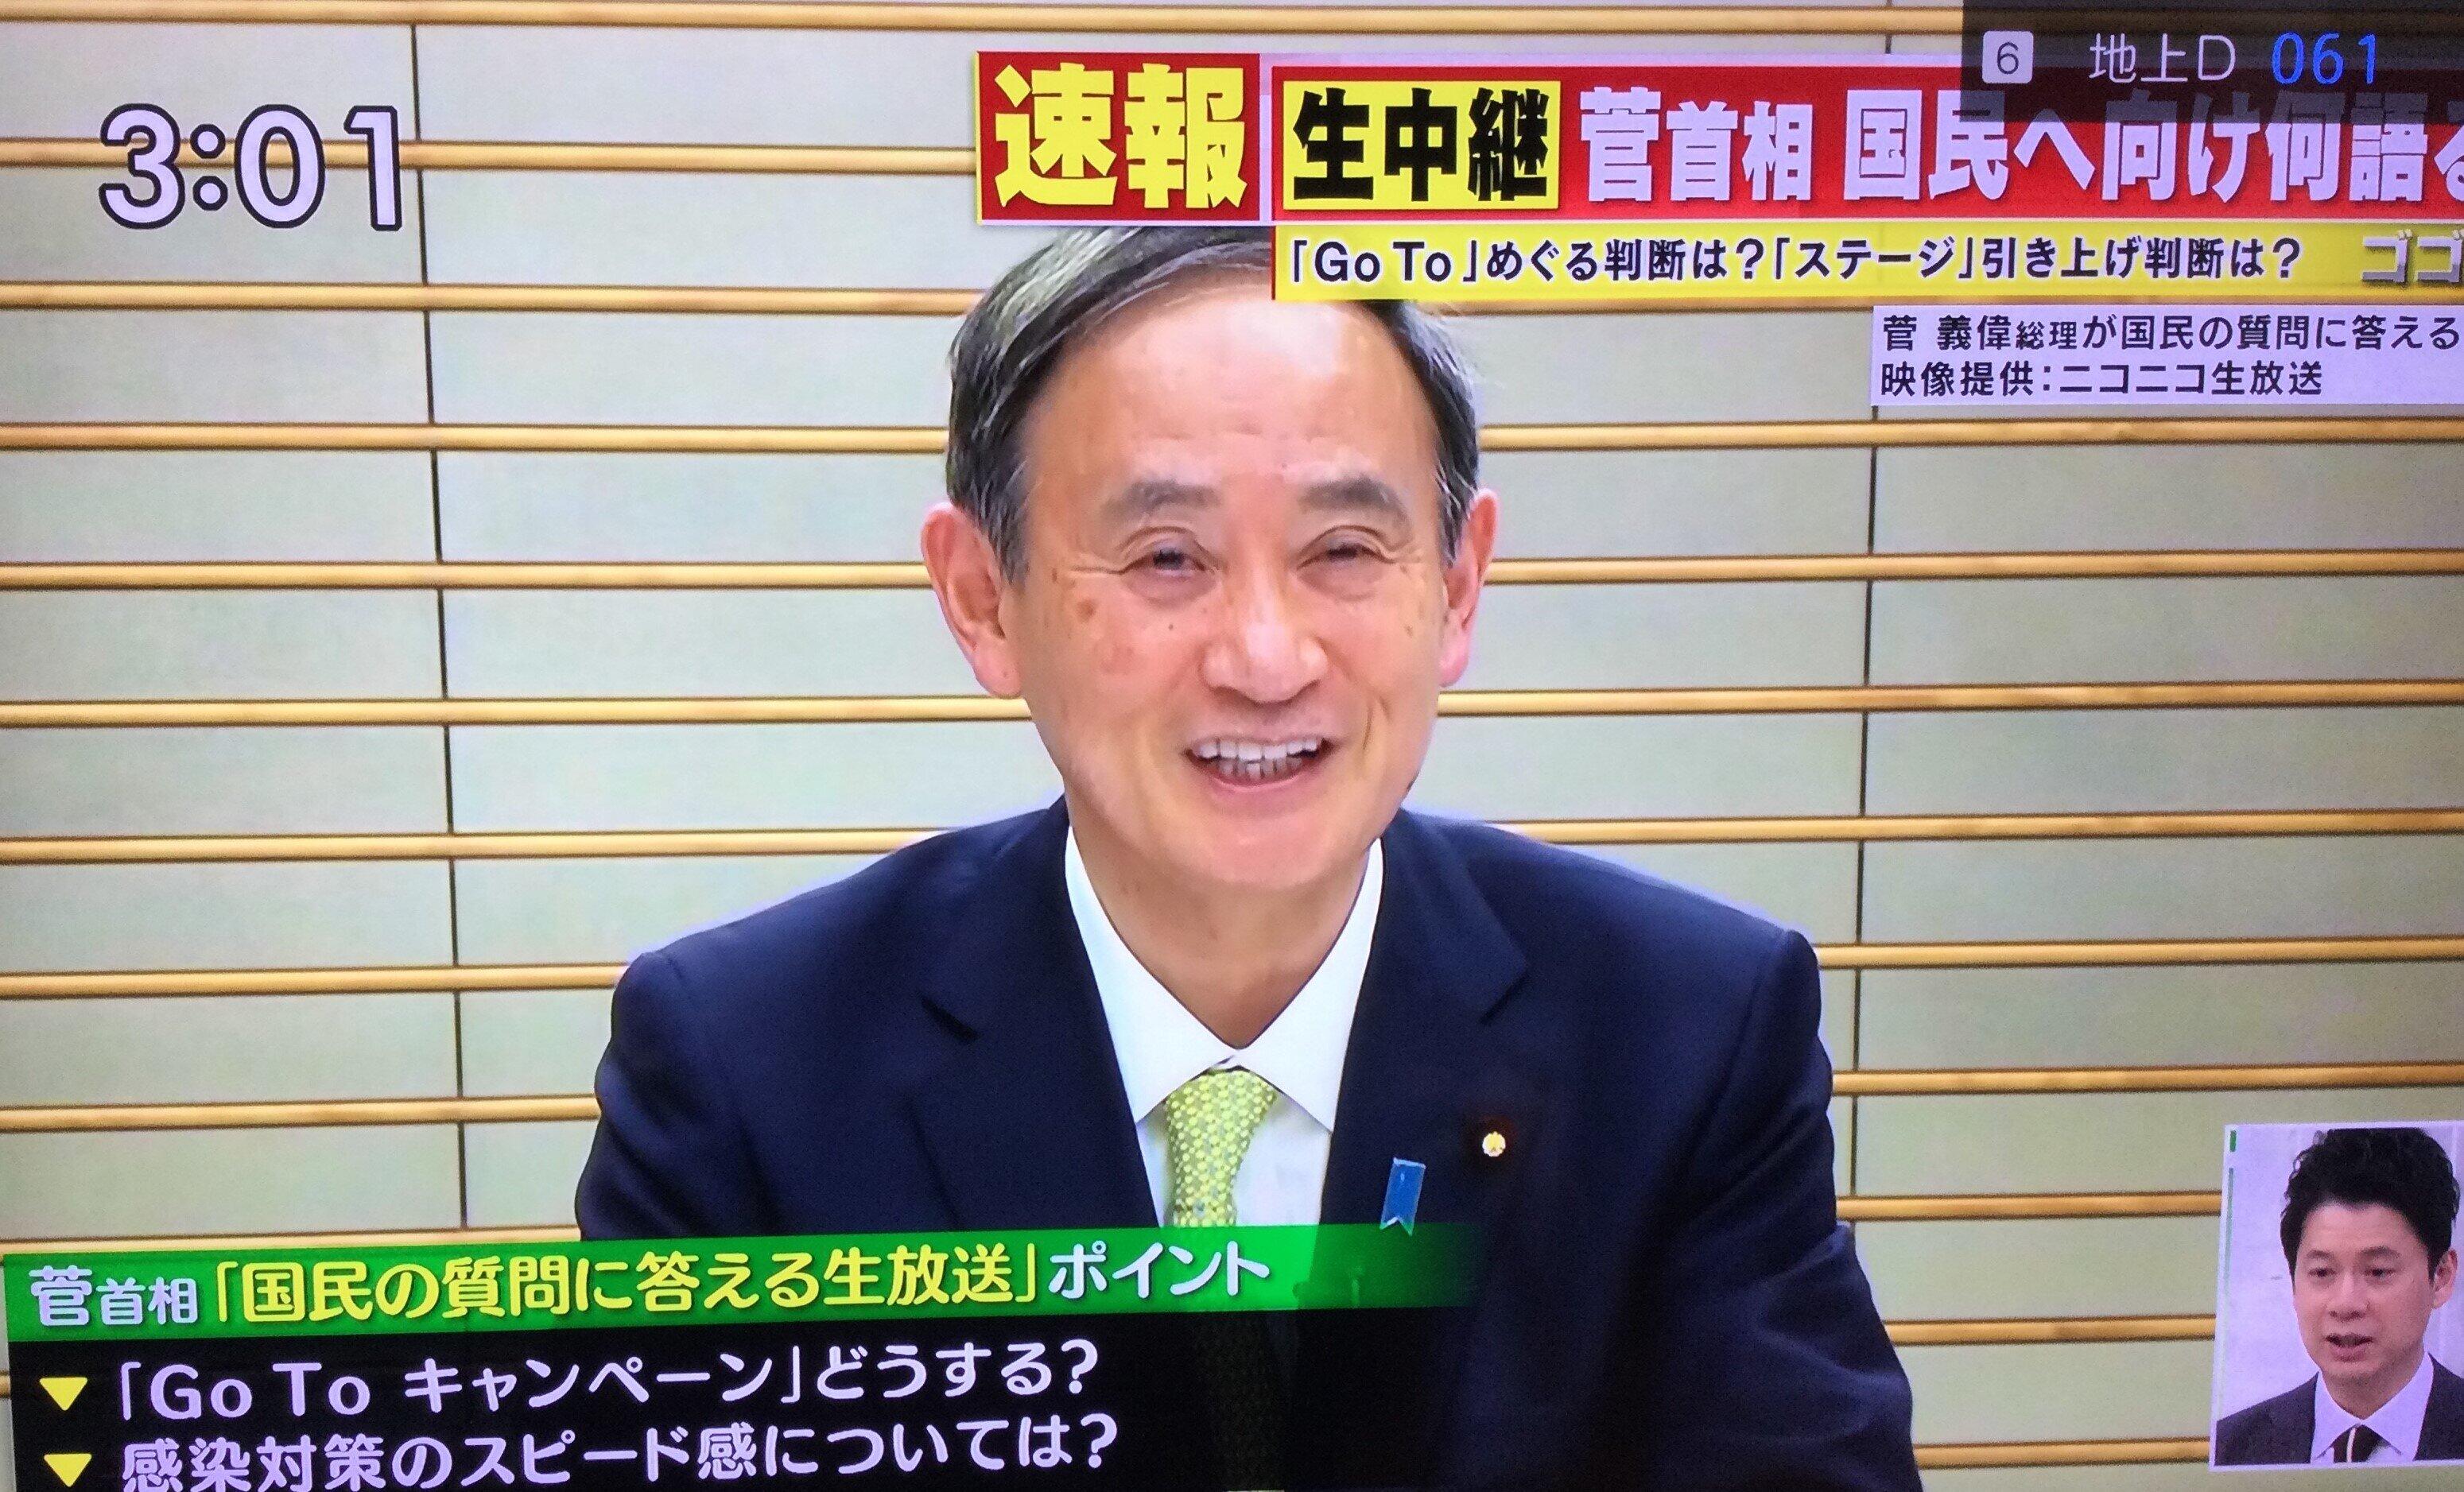 「ガースーです」発言が猛批判を浴びている菅義偉首相